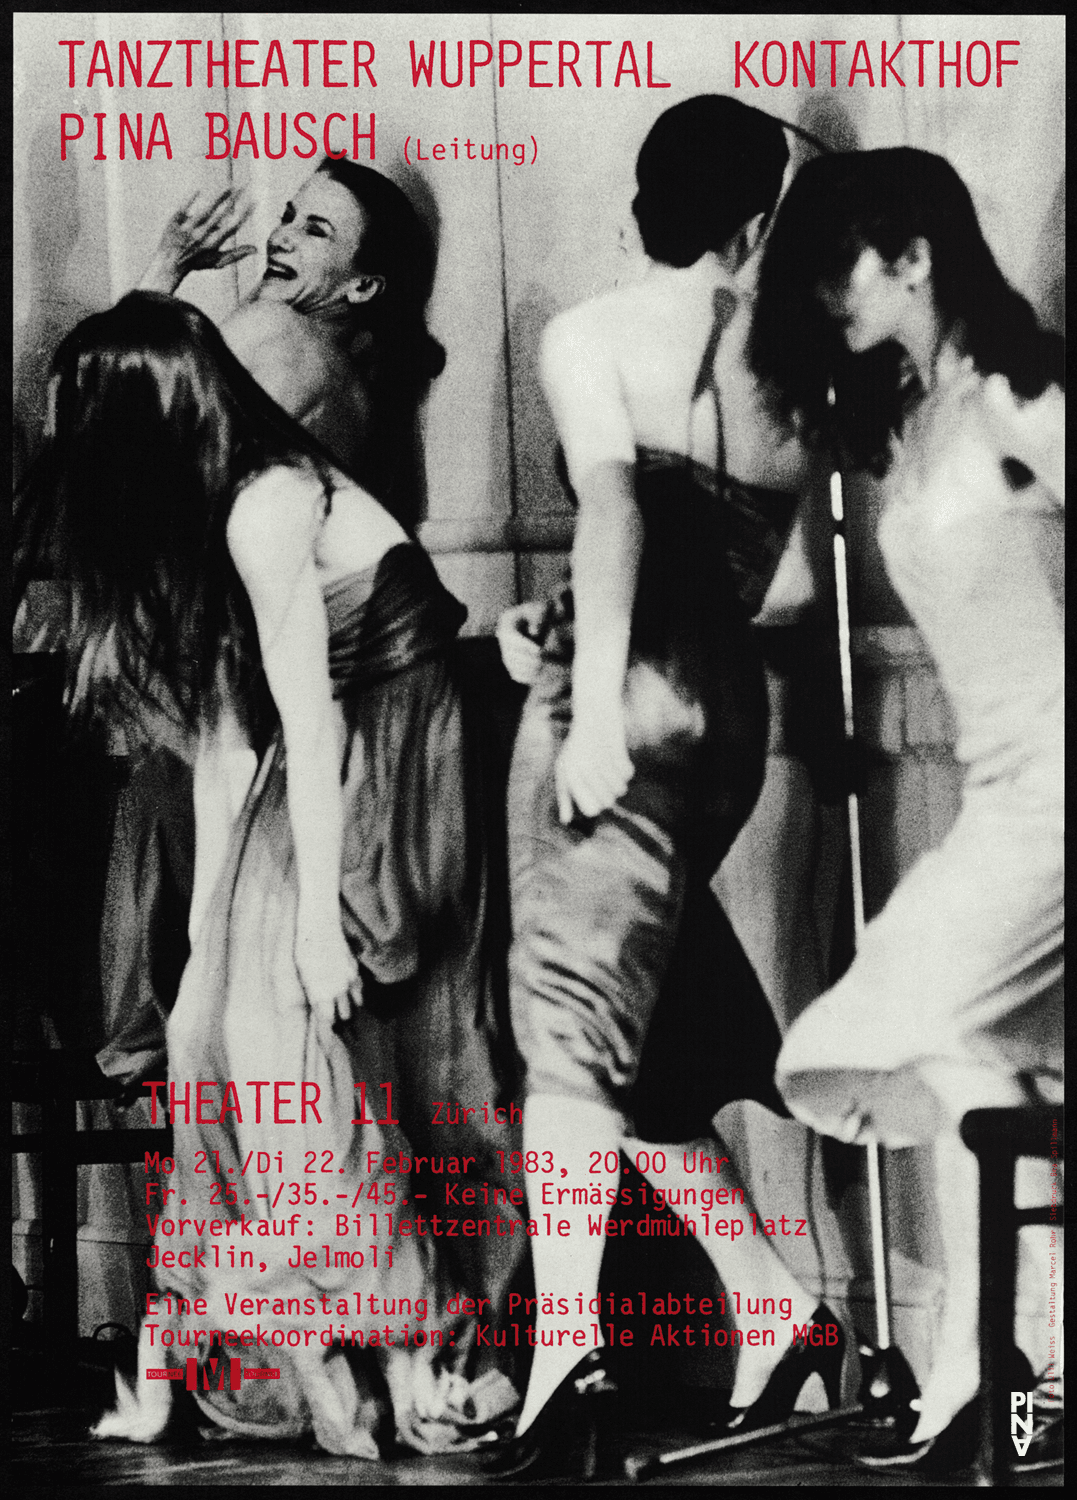 Poster for “Kontakthof” by Pina Bausch in Zurich, 02/21/1983 – 02/25/1983